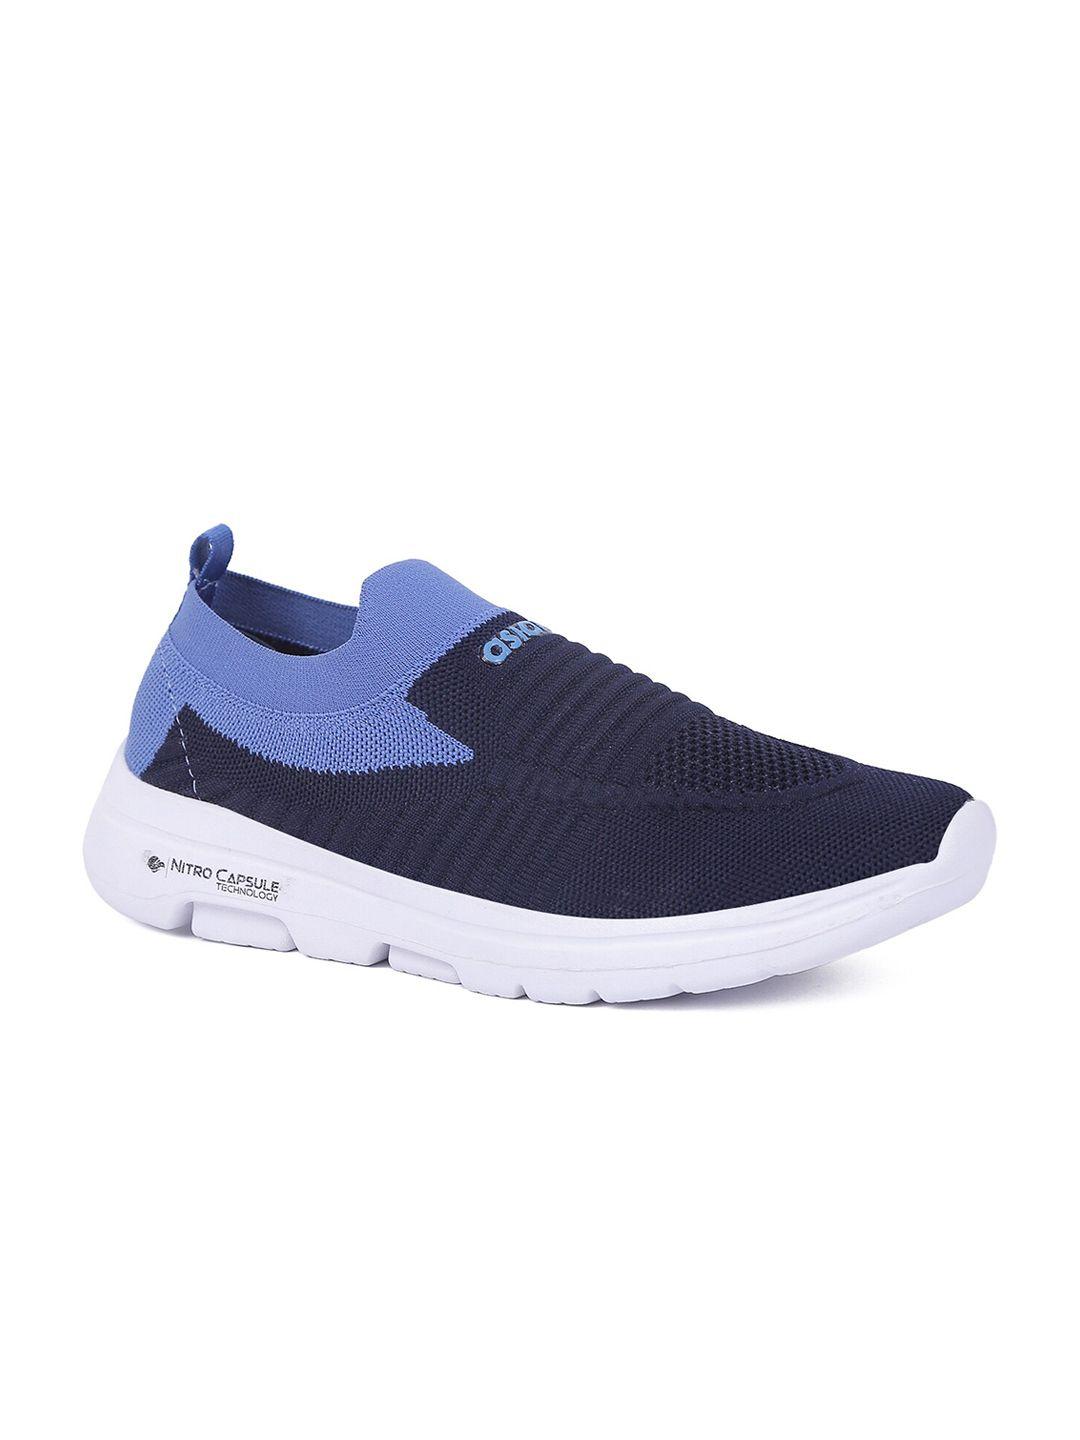 asian men navy blue colourblocked slip-on sneakers